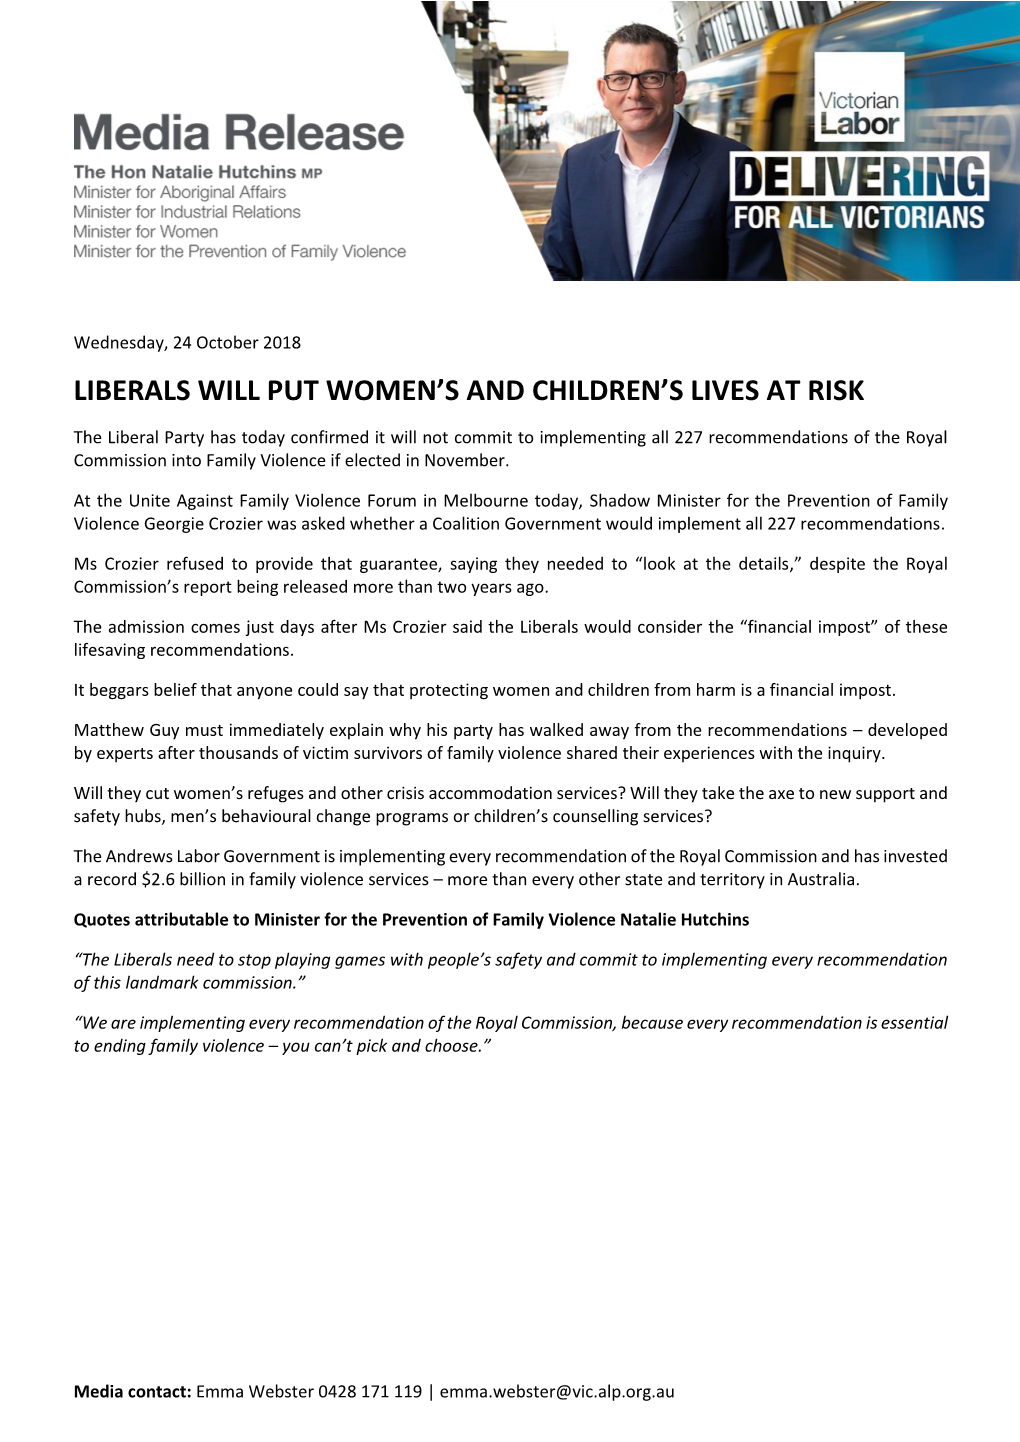 Liberals Will Put Women's and Children's